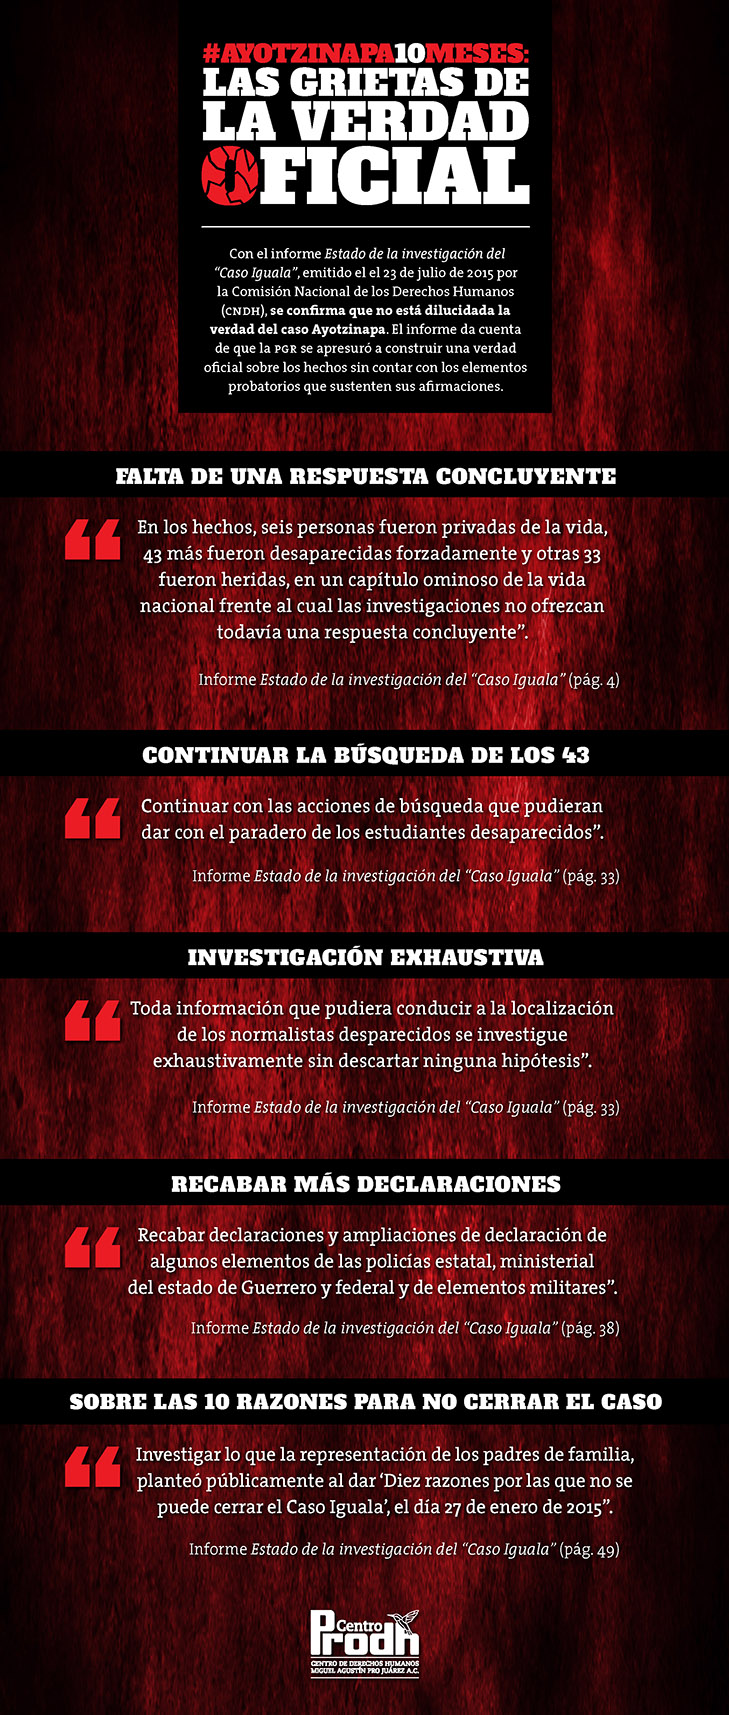 #Ayotzinapa10meses: Las grietas de la verdad oficial